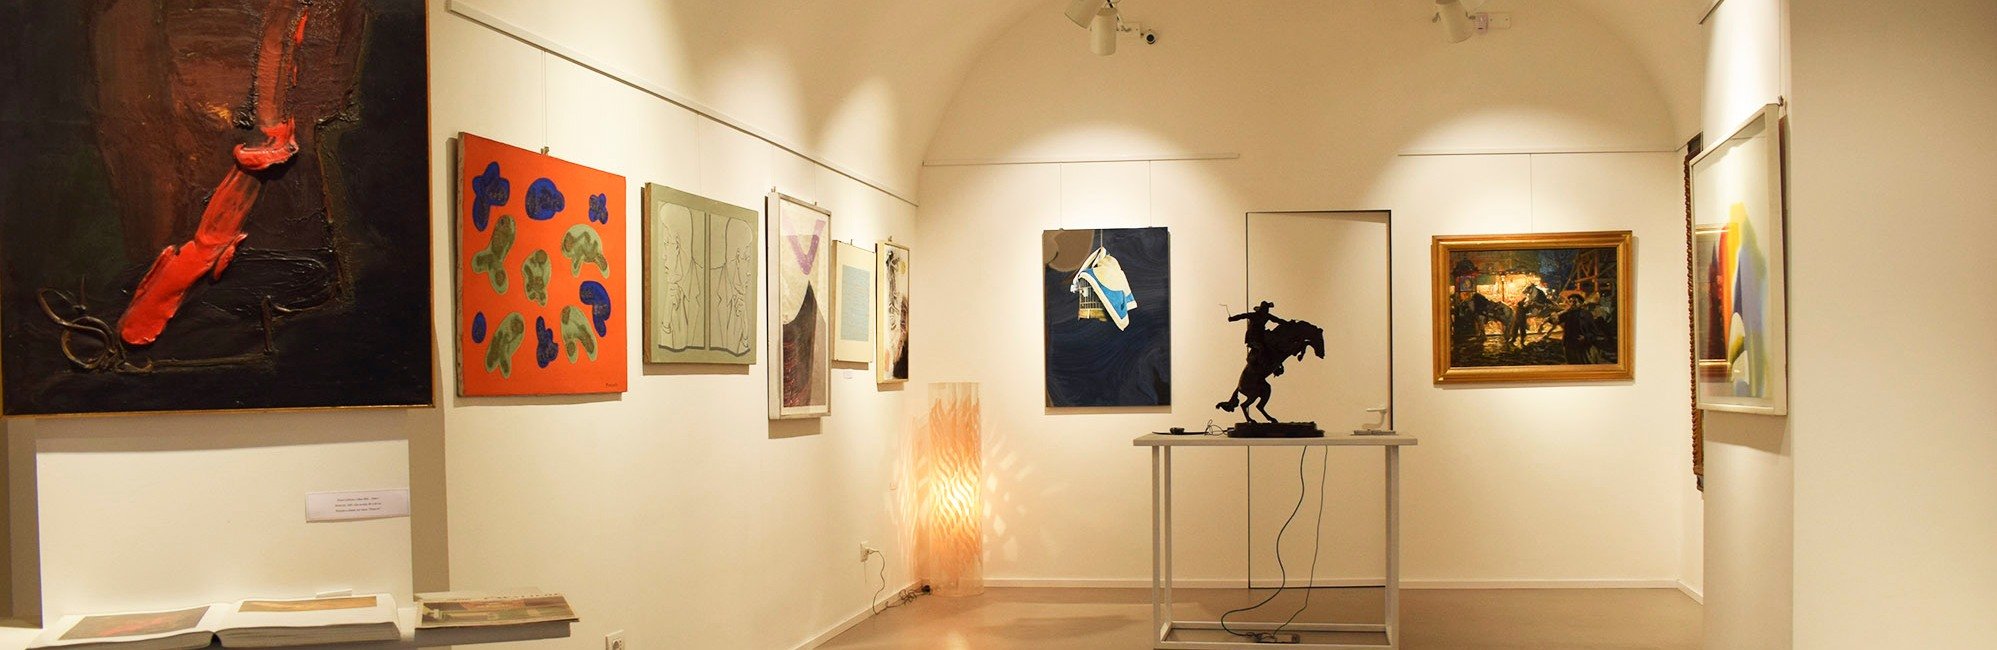 Galleria d'arte Ponti